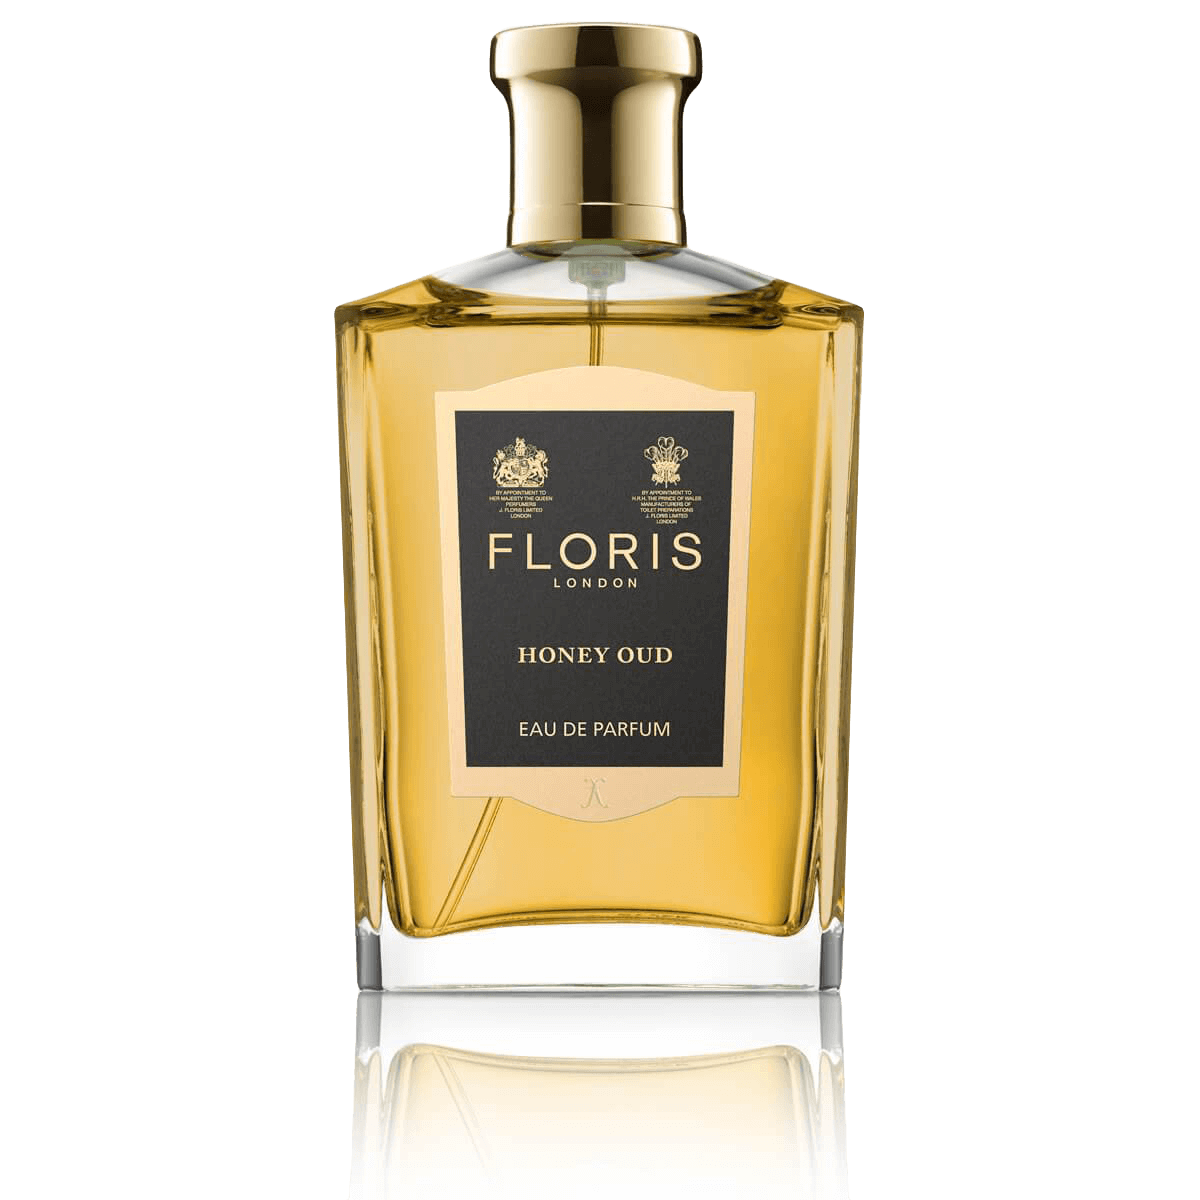 FLORIS LONDON Honey OUD EAU DE PARFUM 100ml